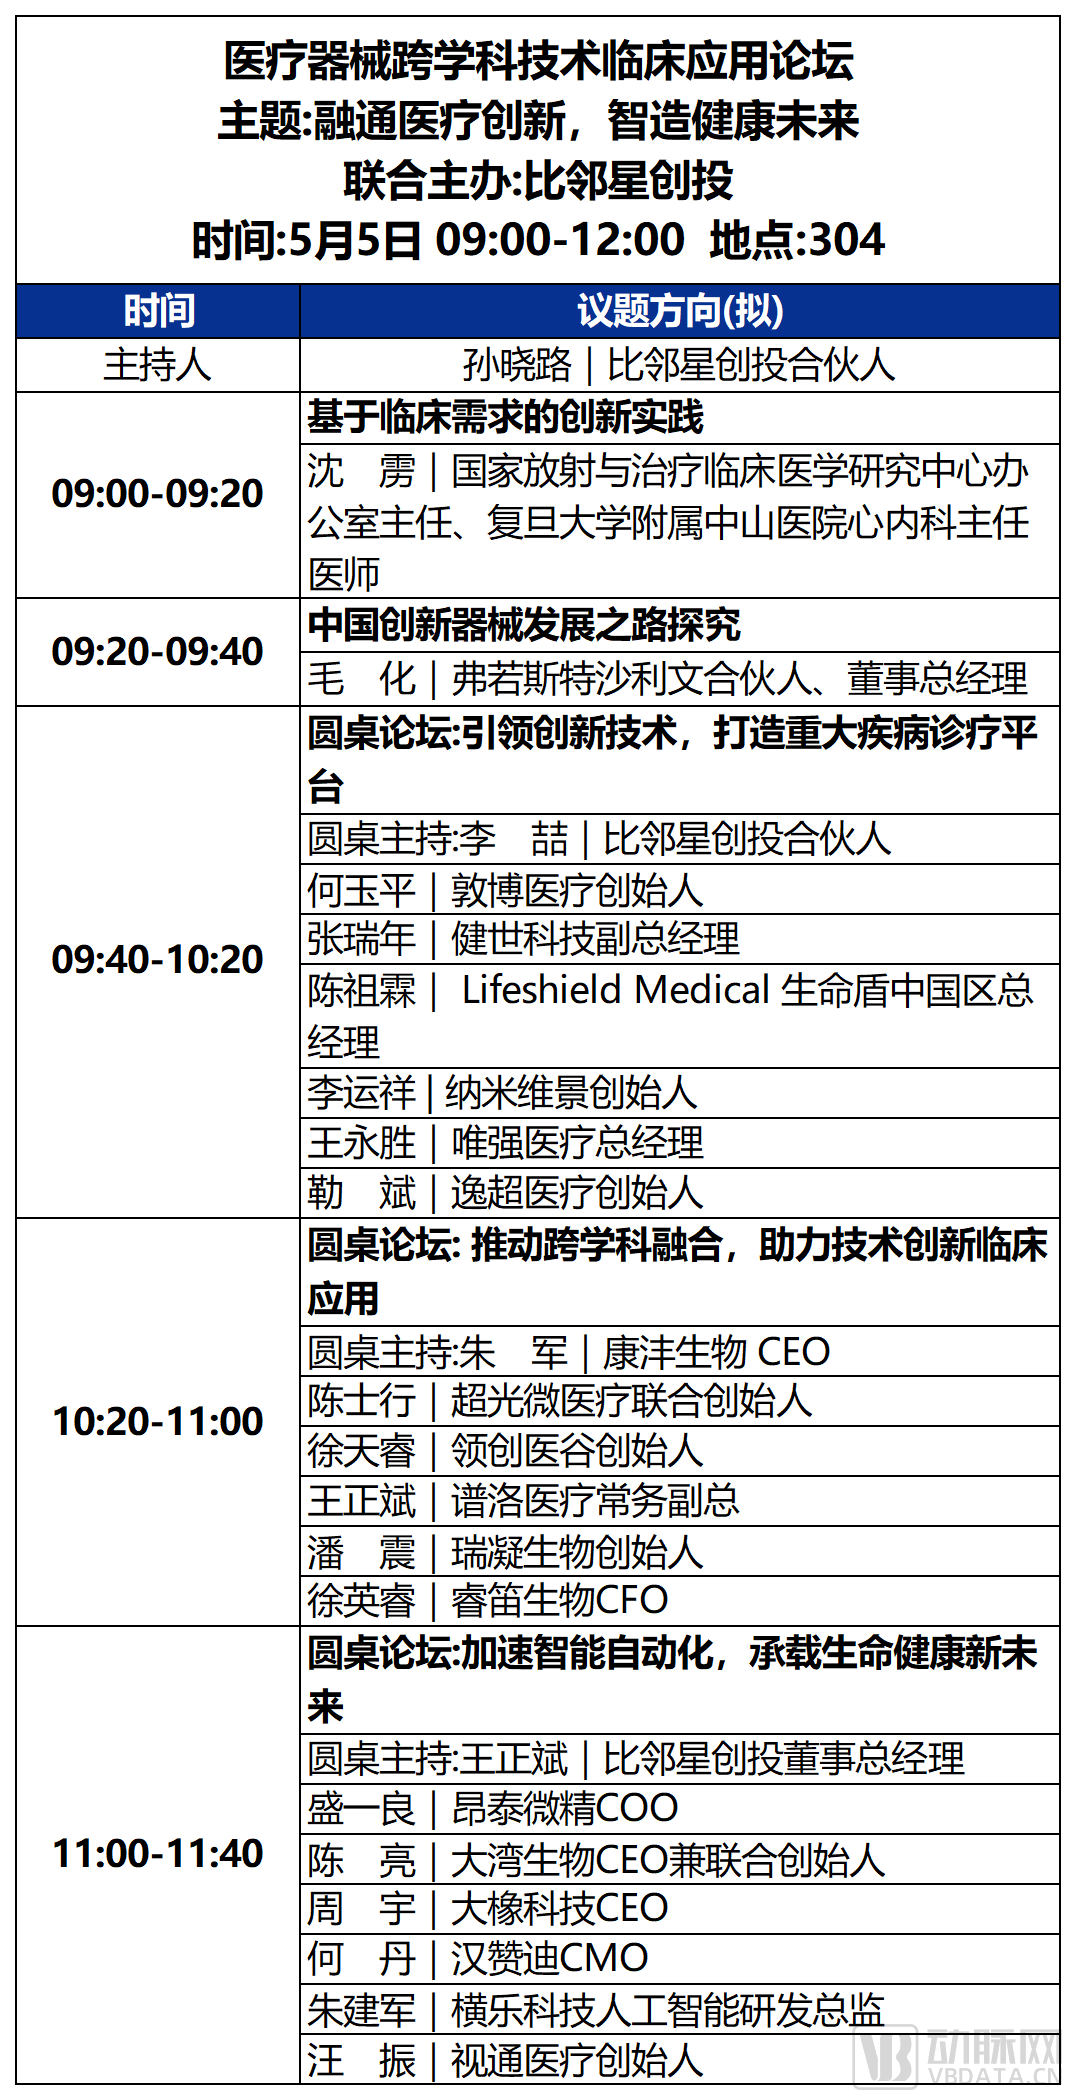 第一天大会议程_3医疗器械跨学科技术临床应用.png